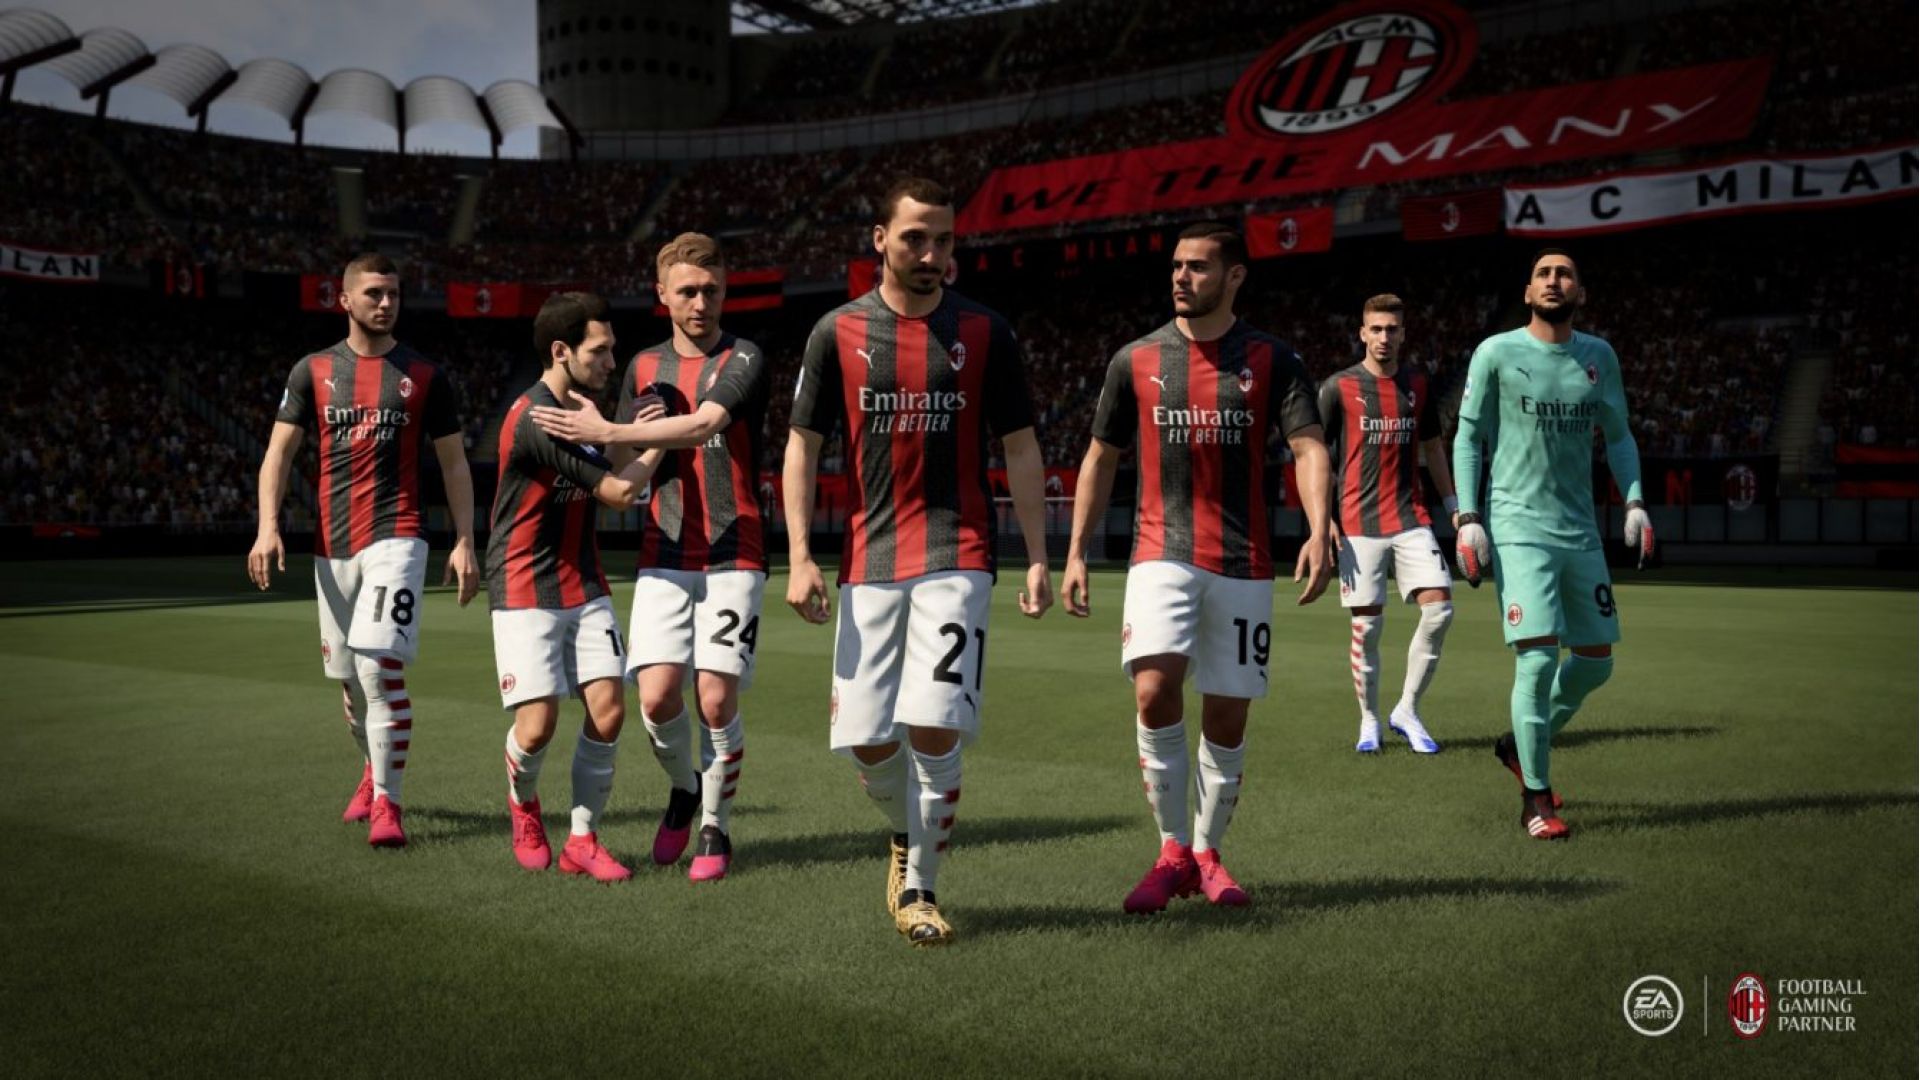 دو تیم آث میلان و اینترمیلان در بازی FIFA 21 لایسنس شده اند